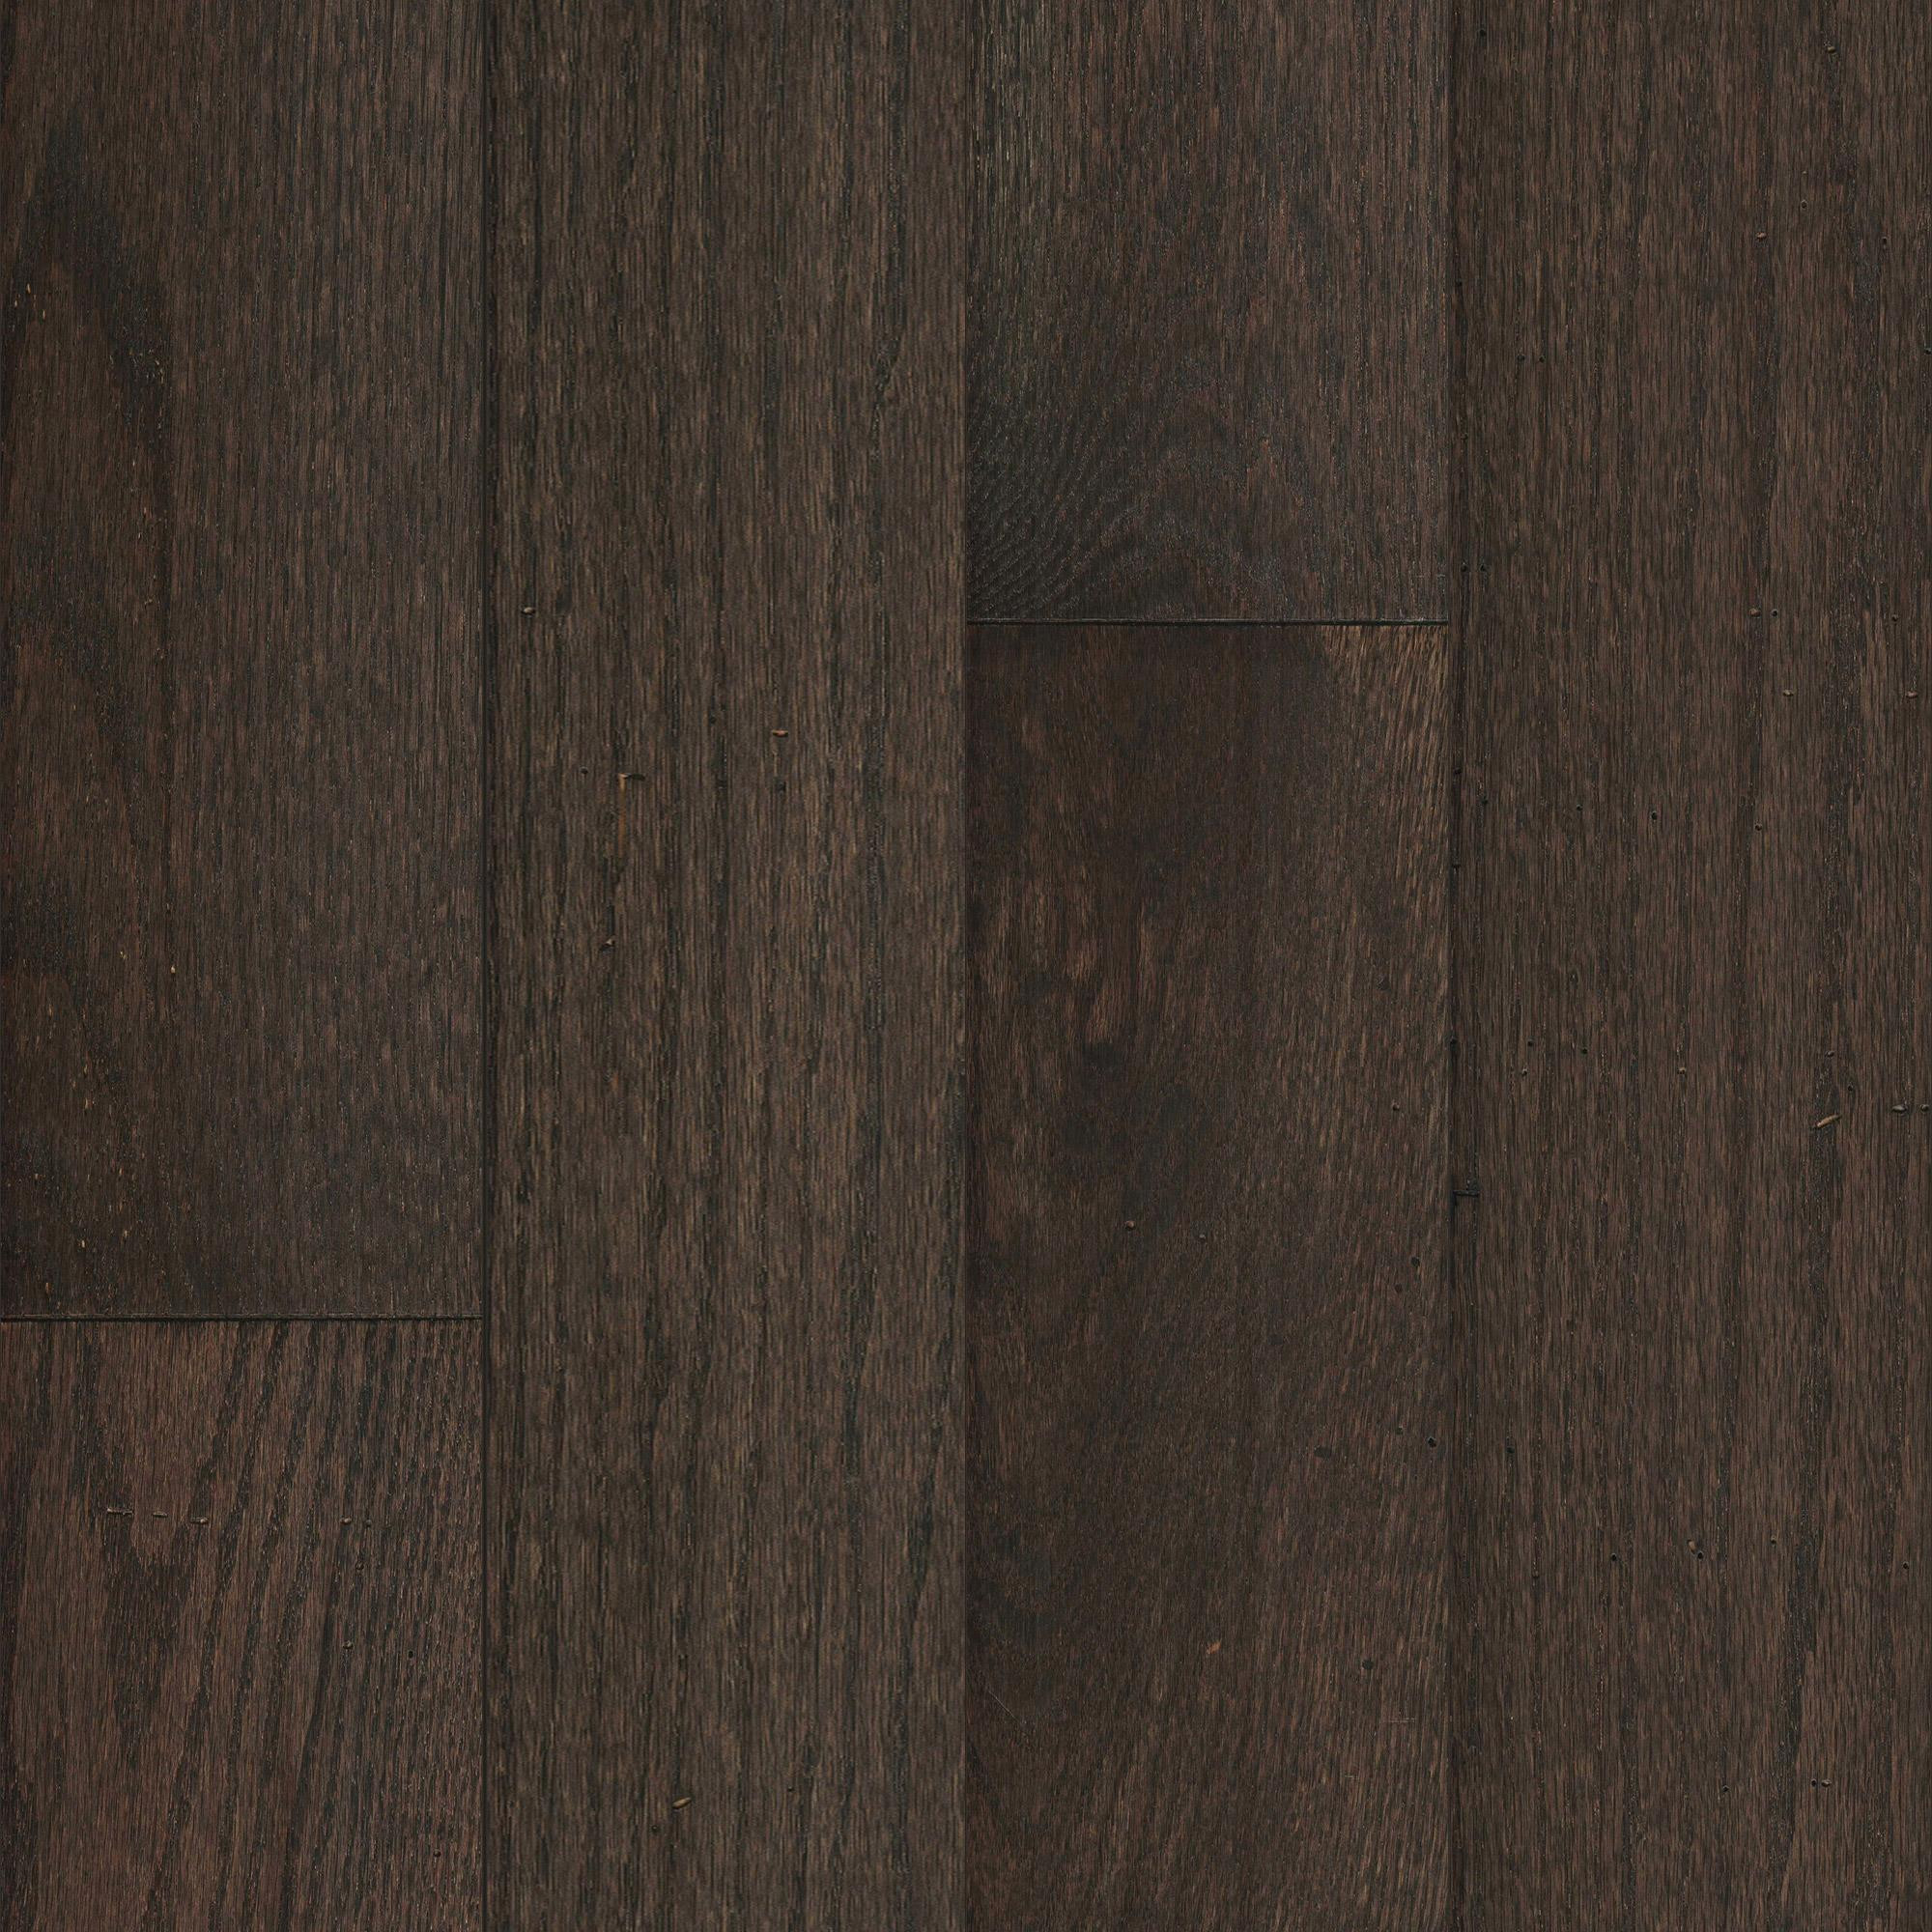 dark white oak hardwood floors of mullican muirfield oak granite 5 wide solid hardwood flooring throughout file 447 15